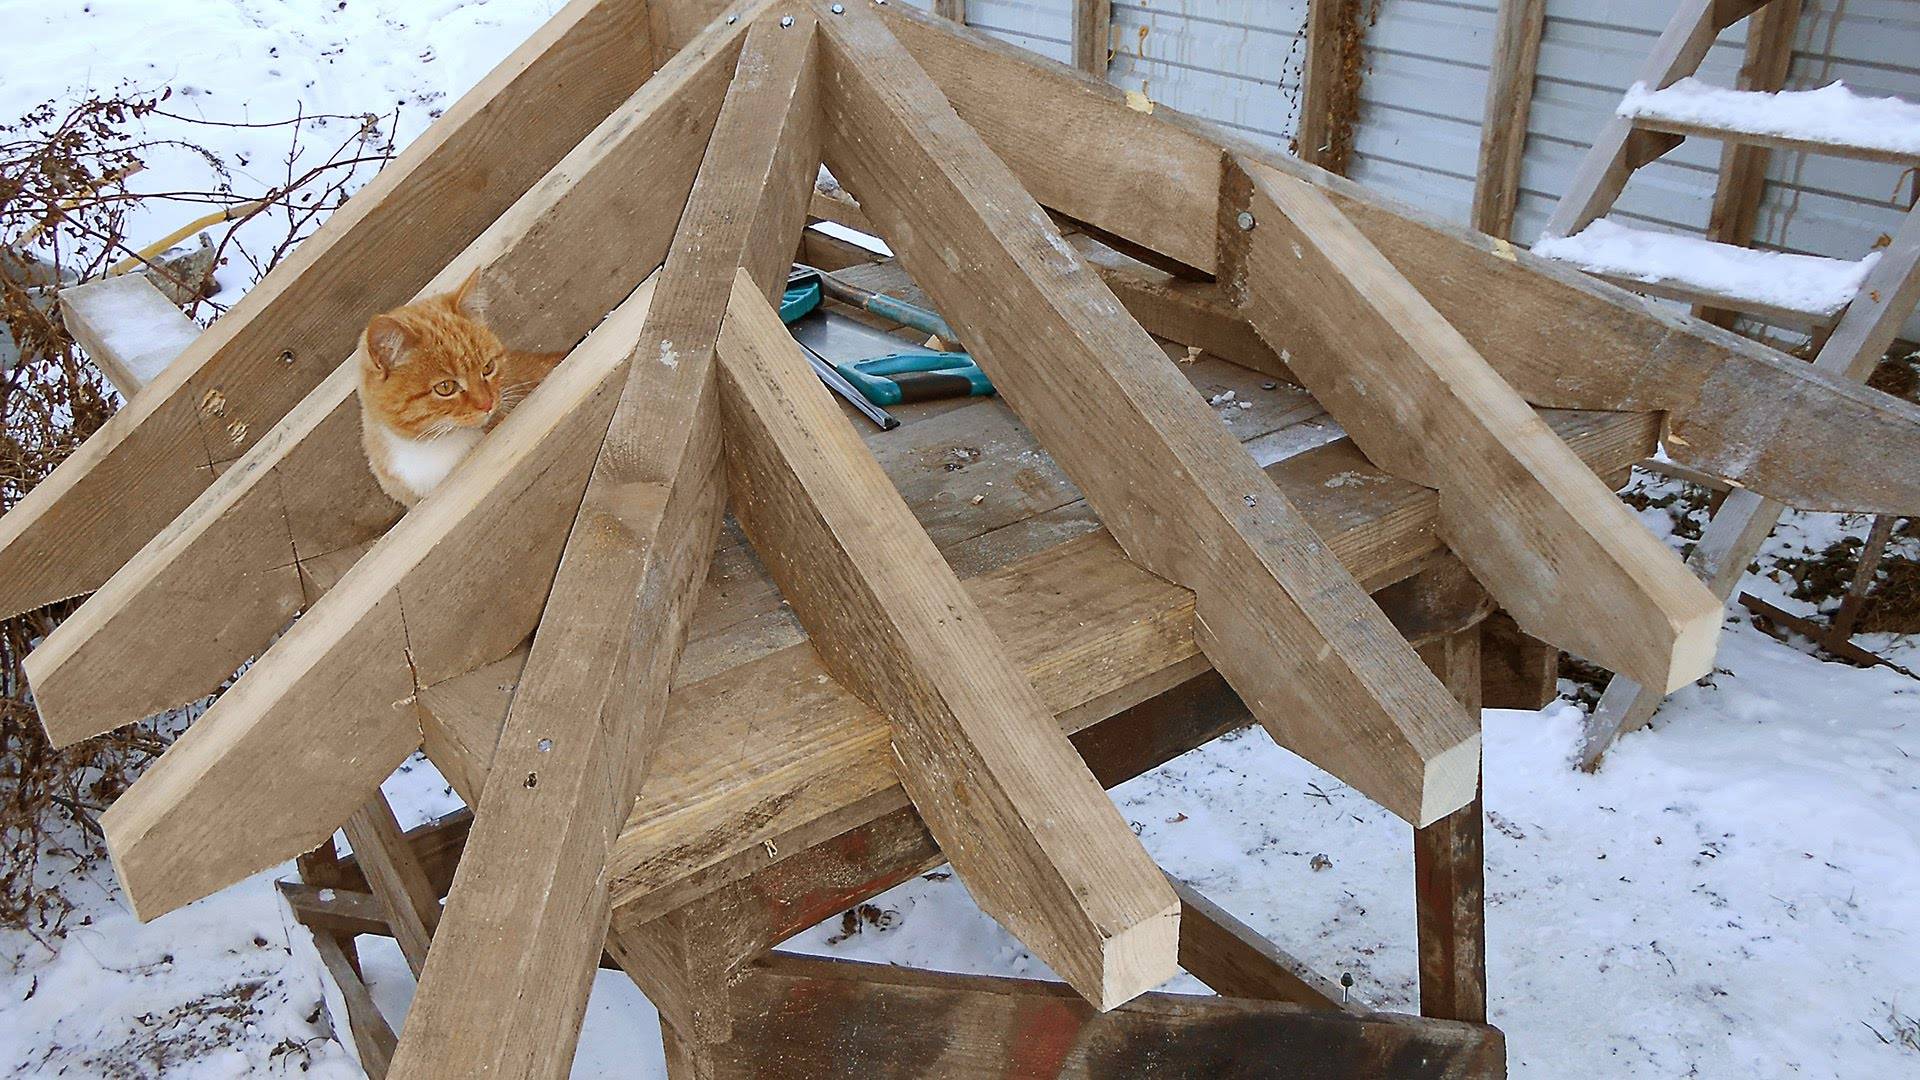 Как правильно сделать двухскатную крышу своими руками – пошаговая инструкция по конструкции и строительству двухскатных крыш